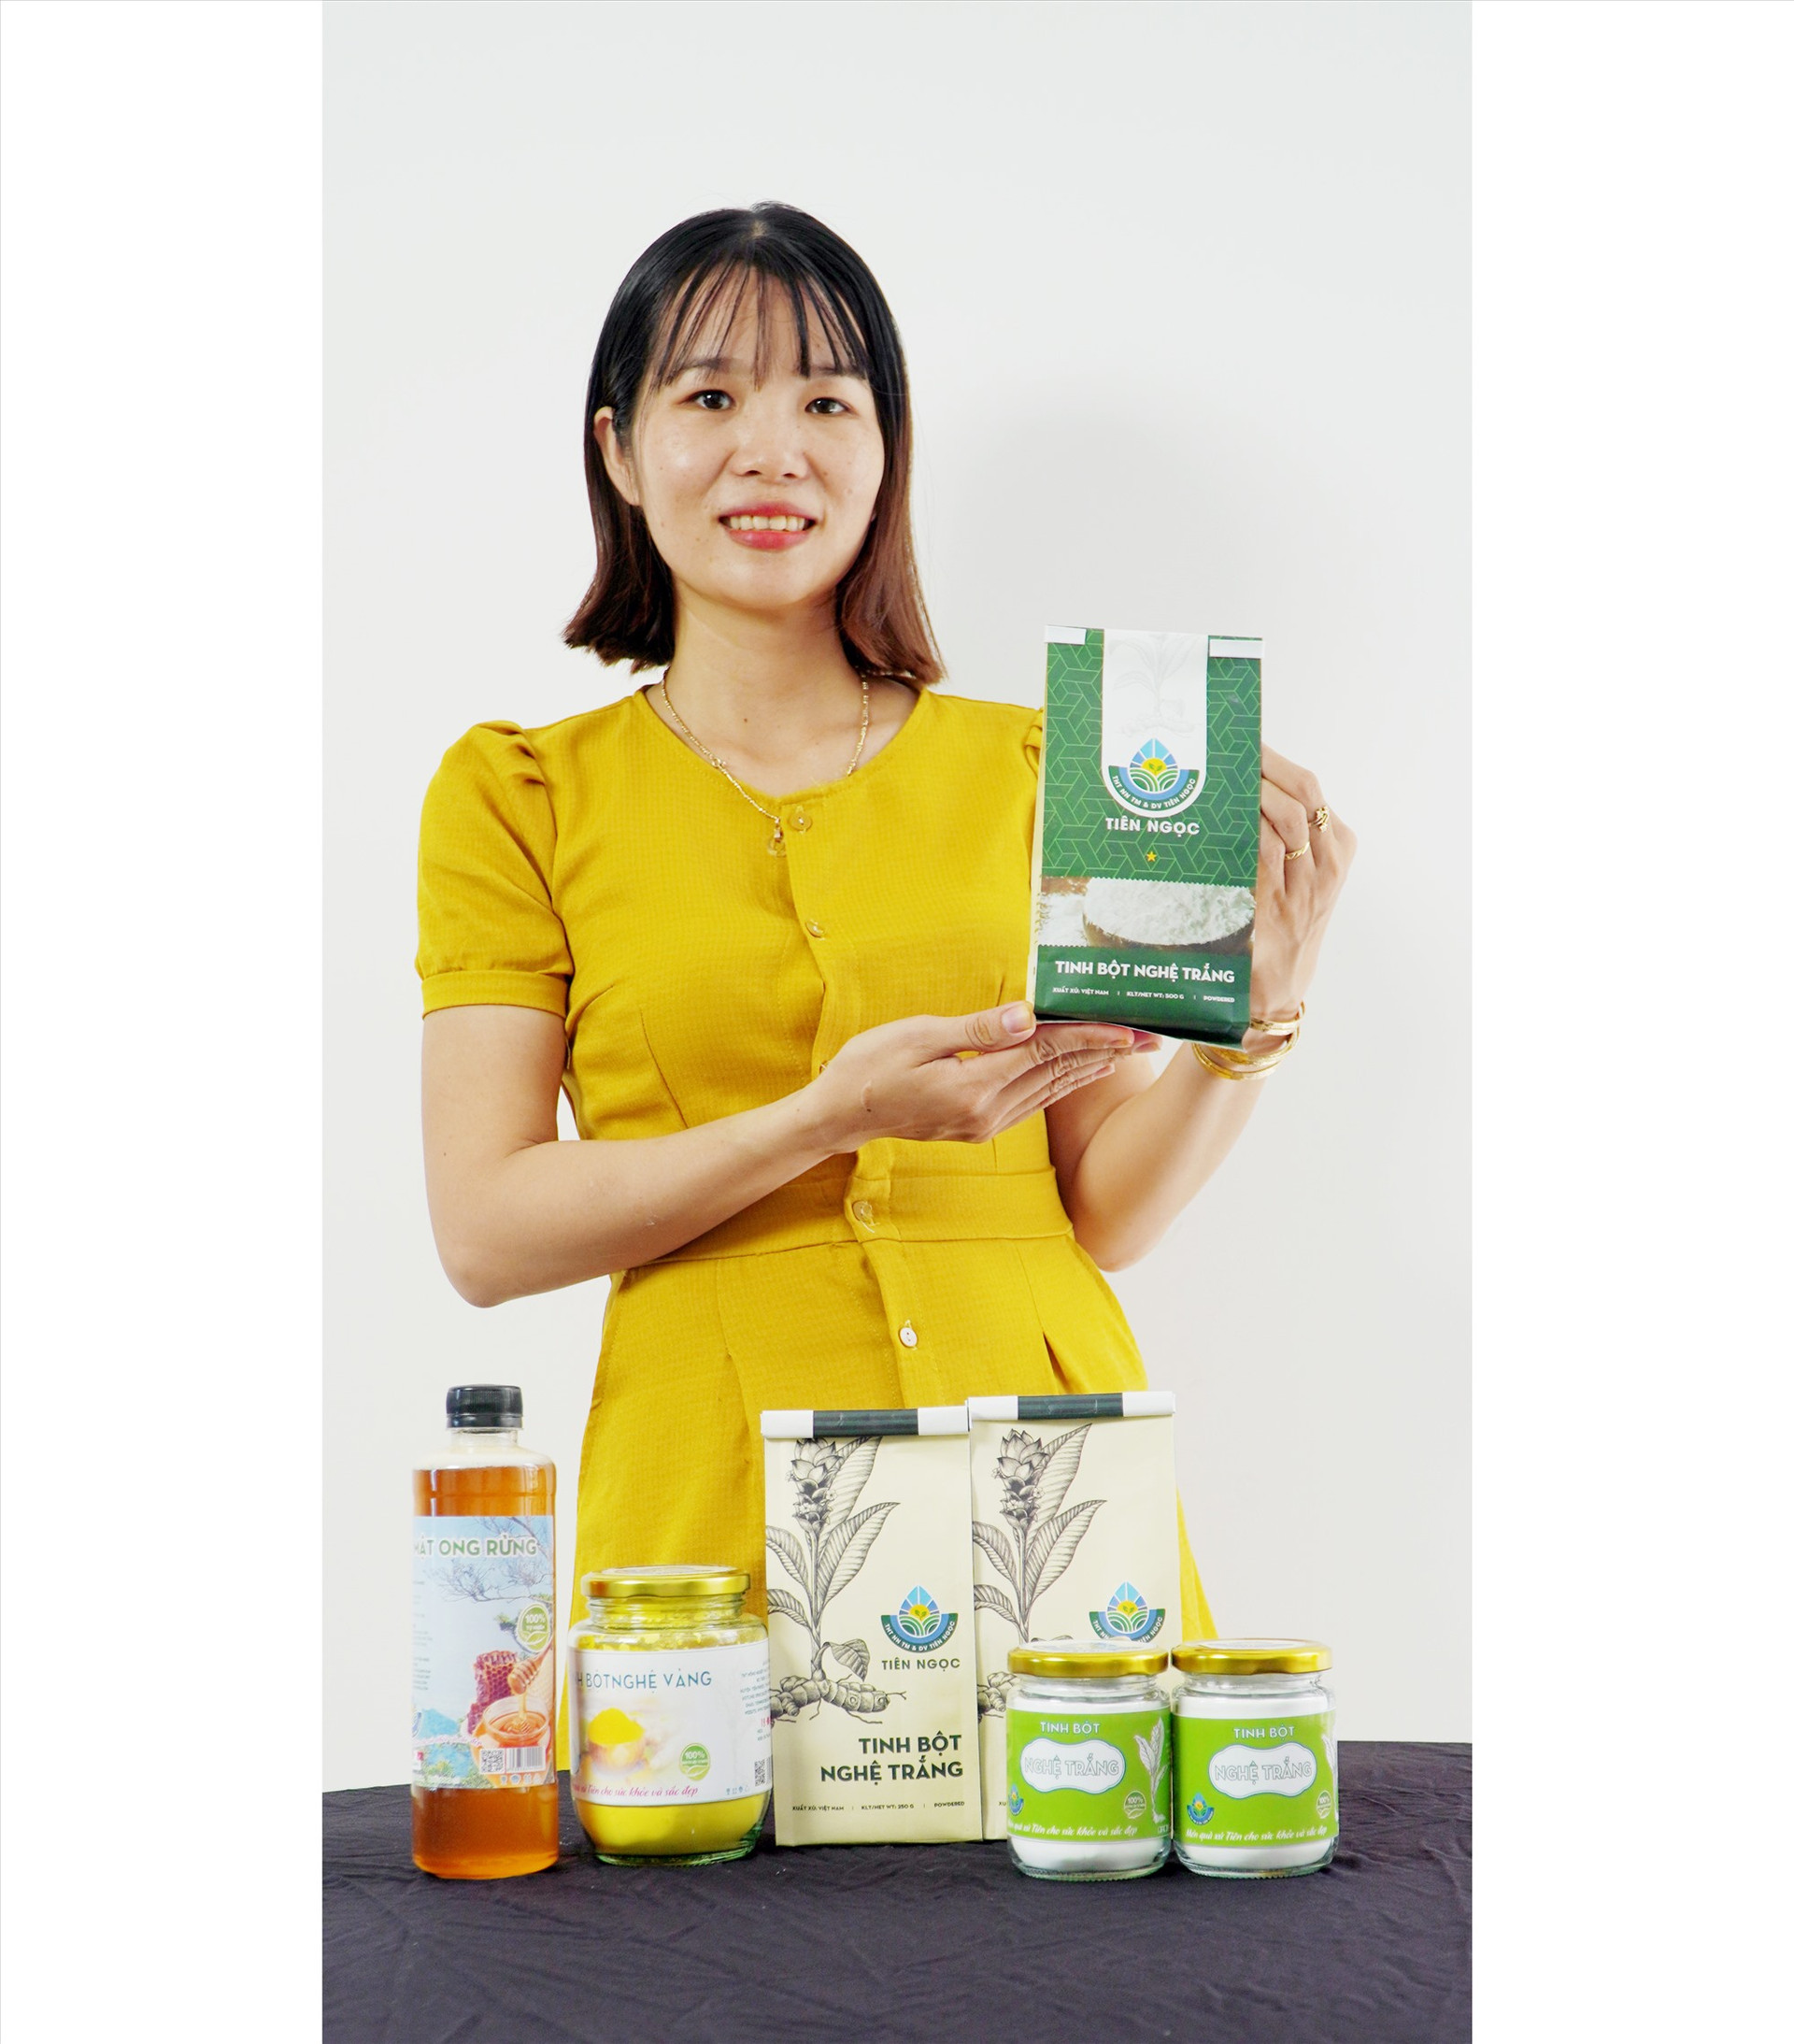 Chị Nương là người tiên phong trong việc thương mại hóa sản phẩm tinh bột nghệ trắng tại Quảng Nam. Ảnh: P.VINH